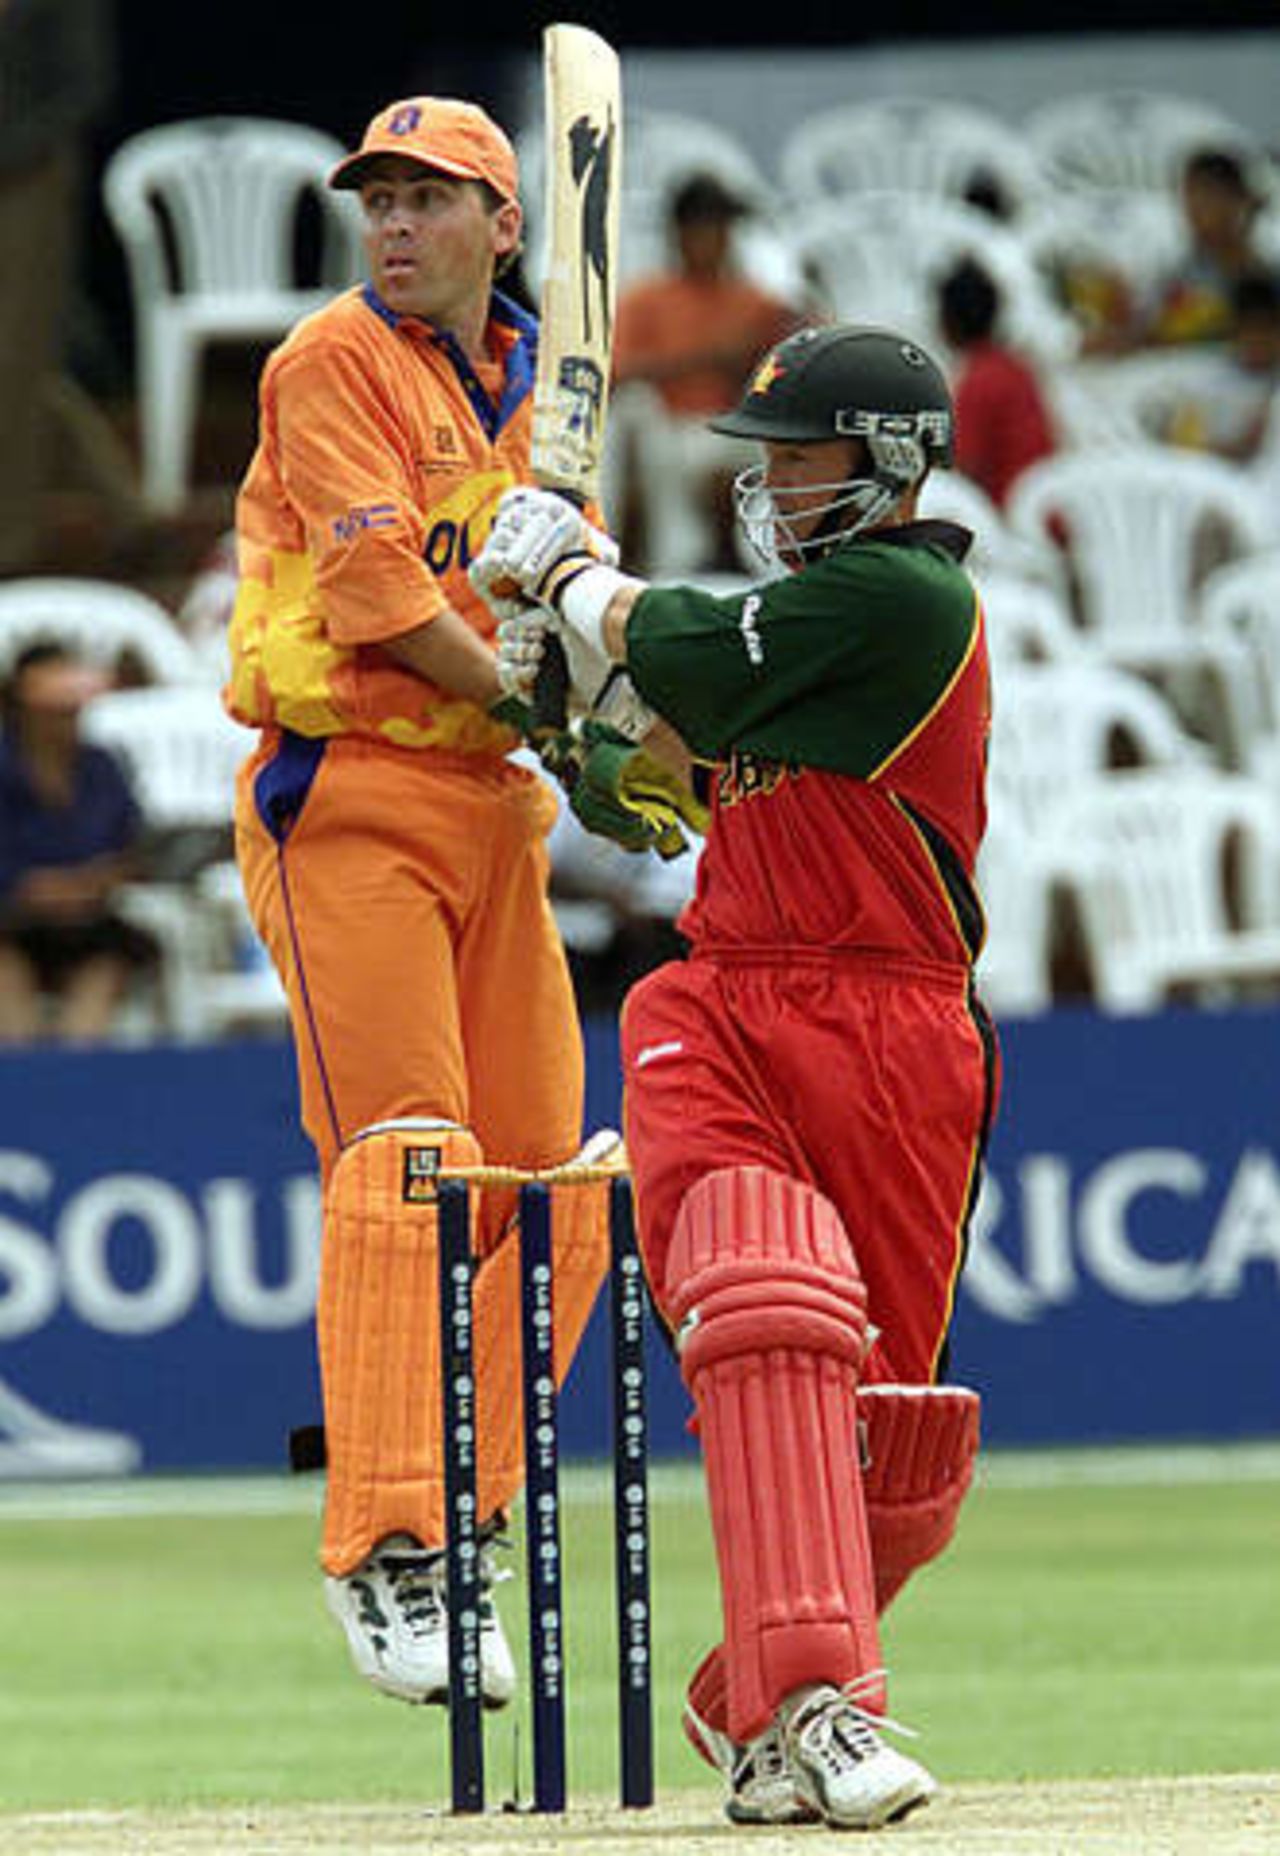 World Cup, 2003 - Zimbabwe v Netherlands at Bulawayo, 28th February 2003